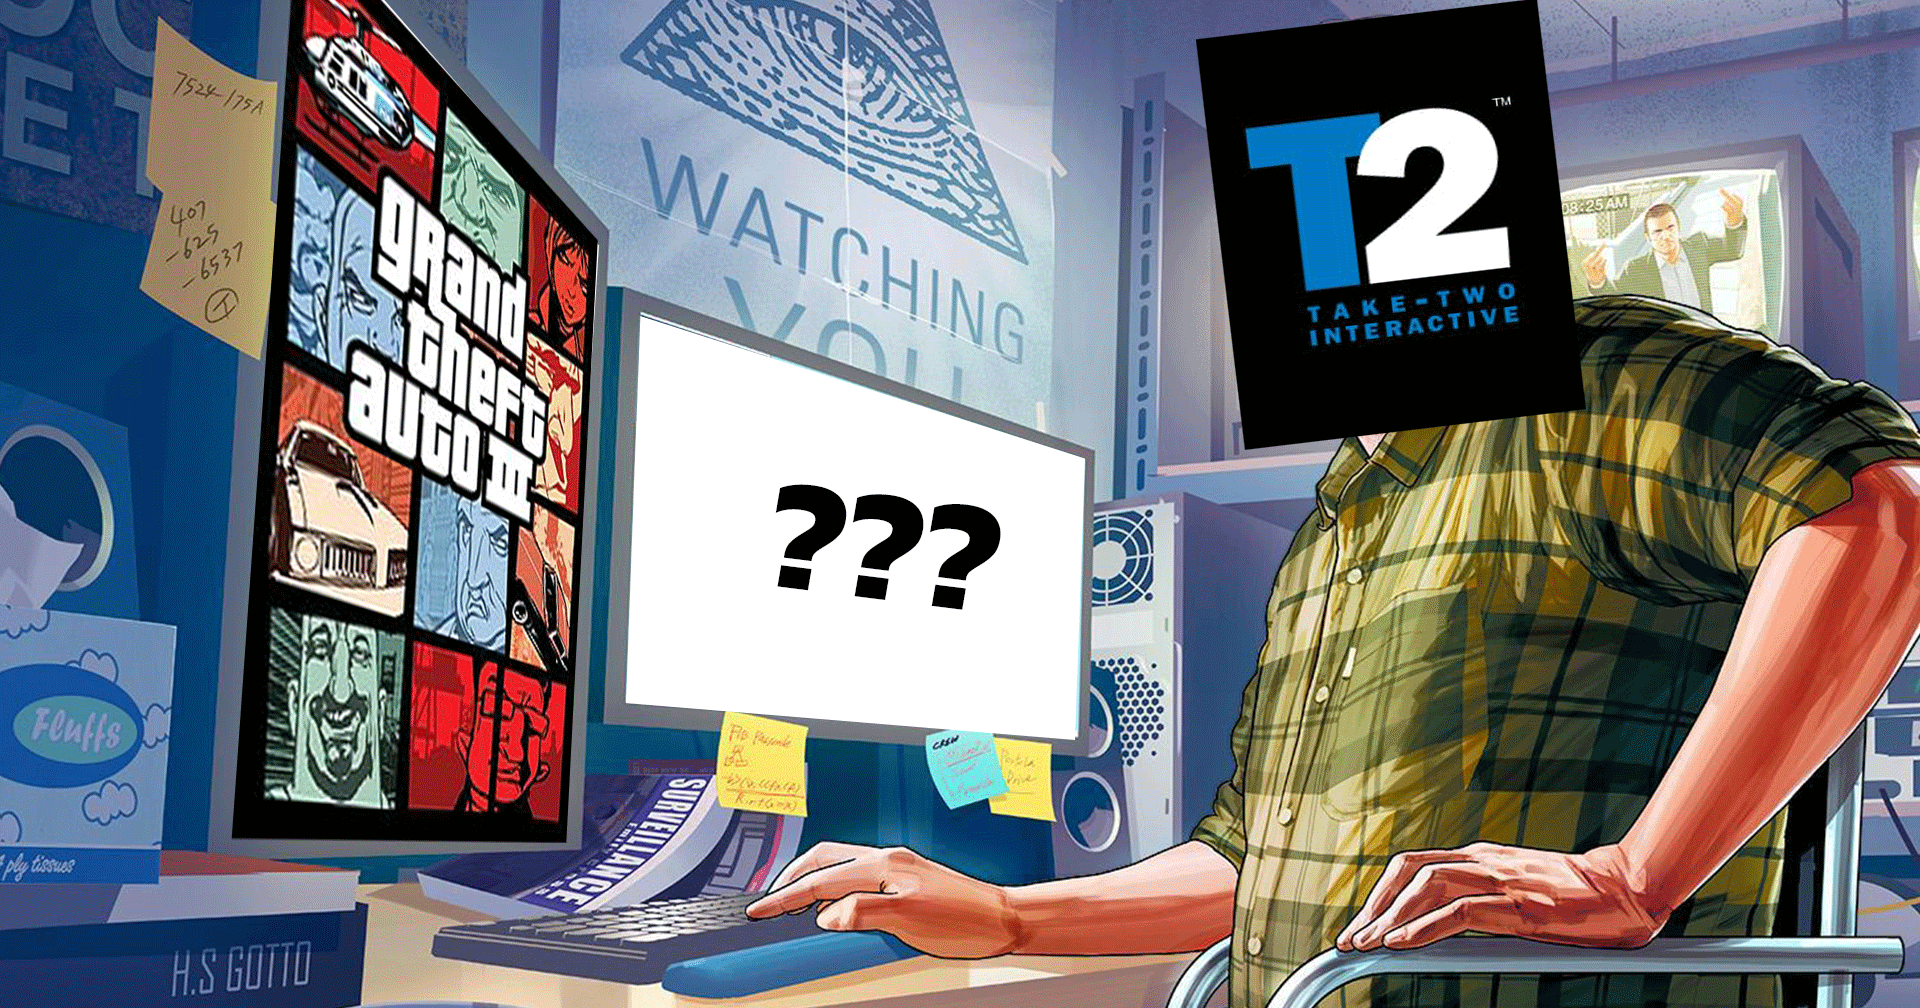 Take-Two กำลังพัฒนาเกม Remaster ให้กับ 3 เกมเก่าของค่าย พร้อมวางจำหน่ายในปี 2022